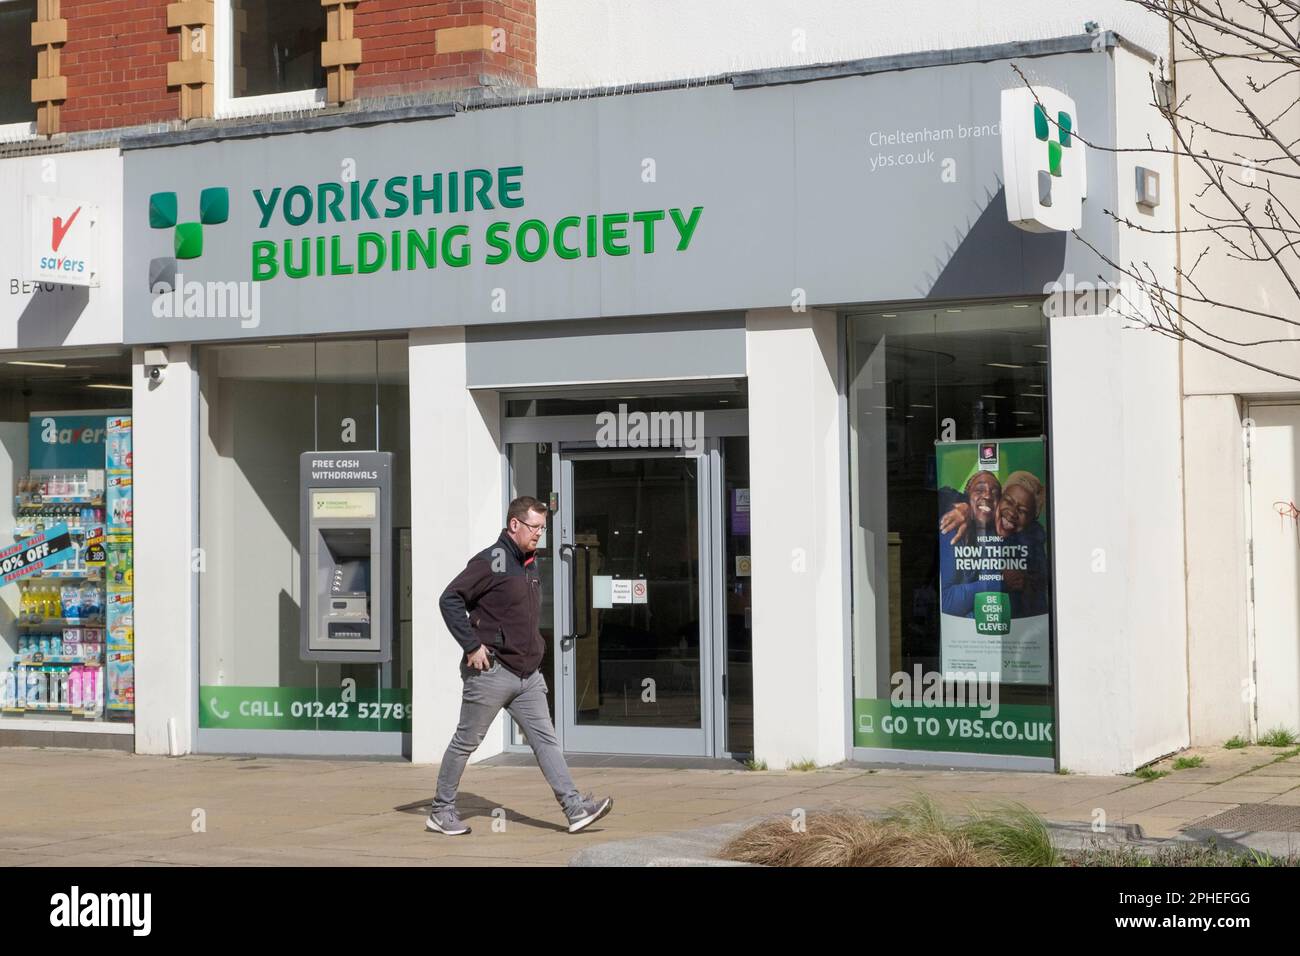 Blick auf das Stadtzentrum von Cheltenham. Yorkshire Building Society Stockfoto